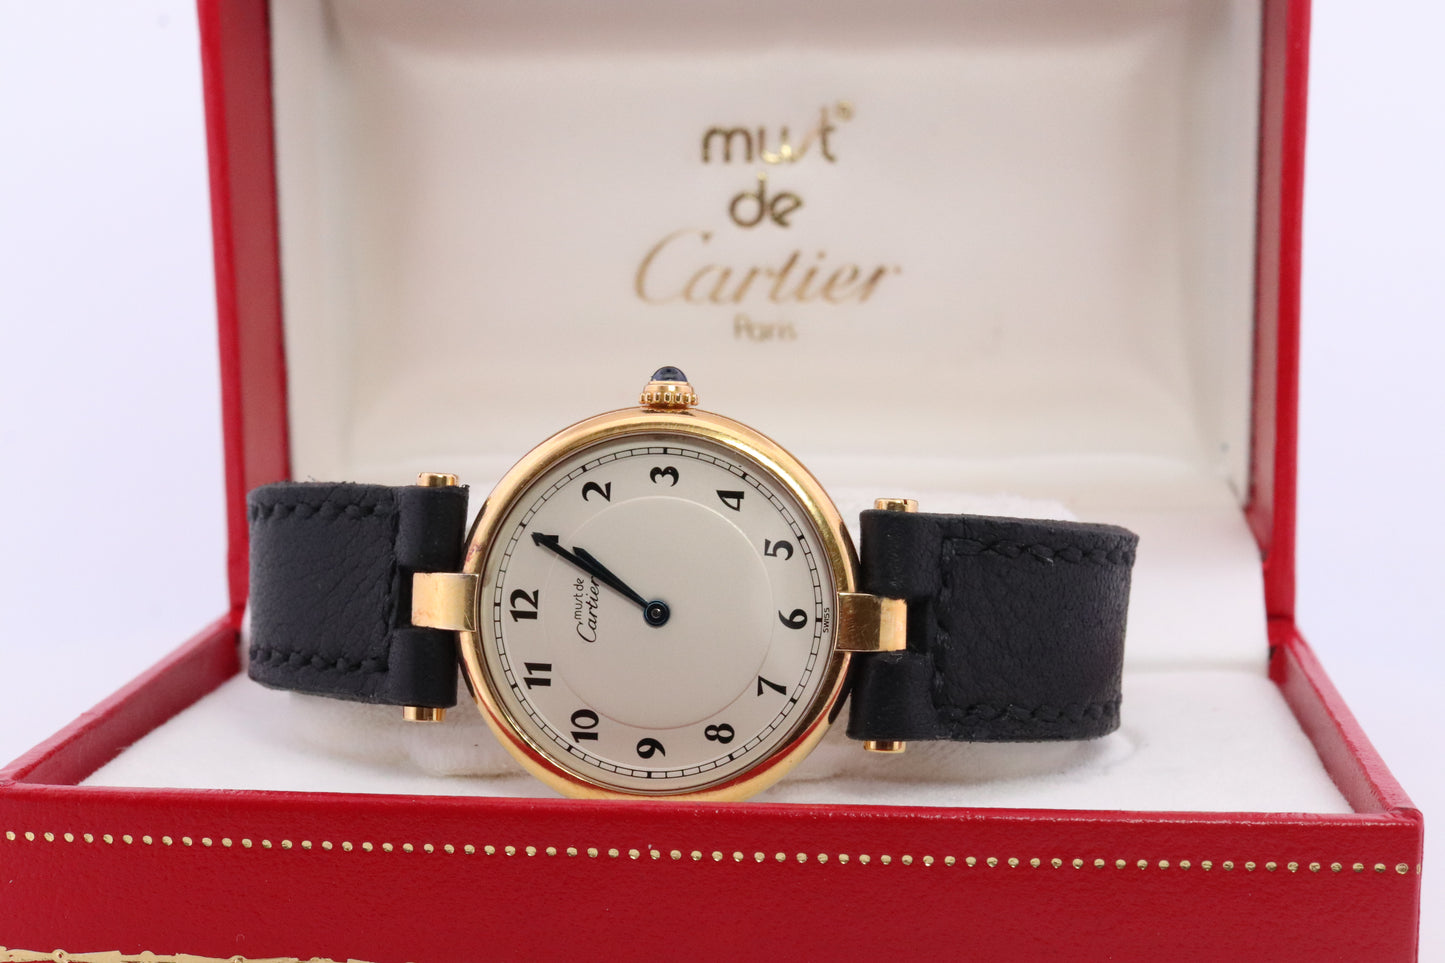 Vintage Must de Cartier Vendome Uhr. ARGENT Cartier 925 Vermeil Quarz Ardent RUND Swiss Made. Originalpapiere st(1-0-92)